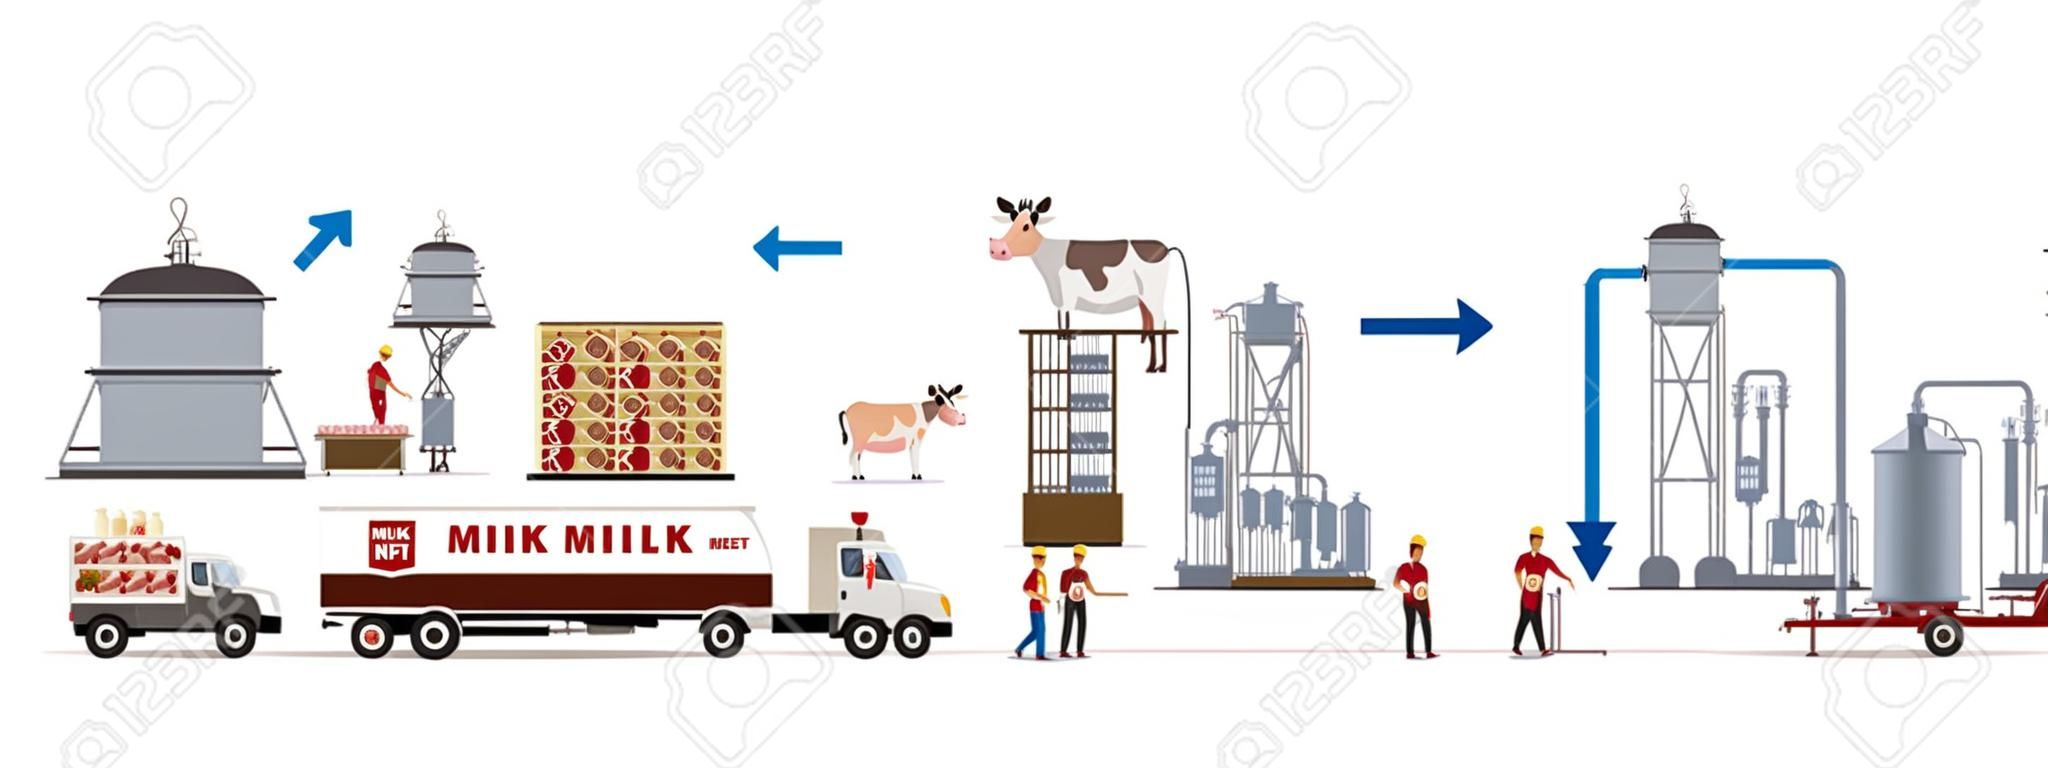 Milch- und Fleischfabrik mit Automaten und Arbeitern. Vektor-illustration